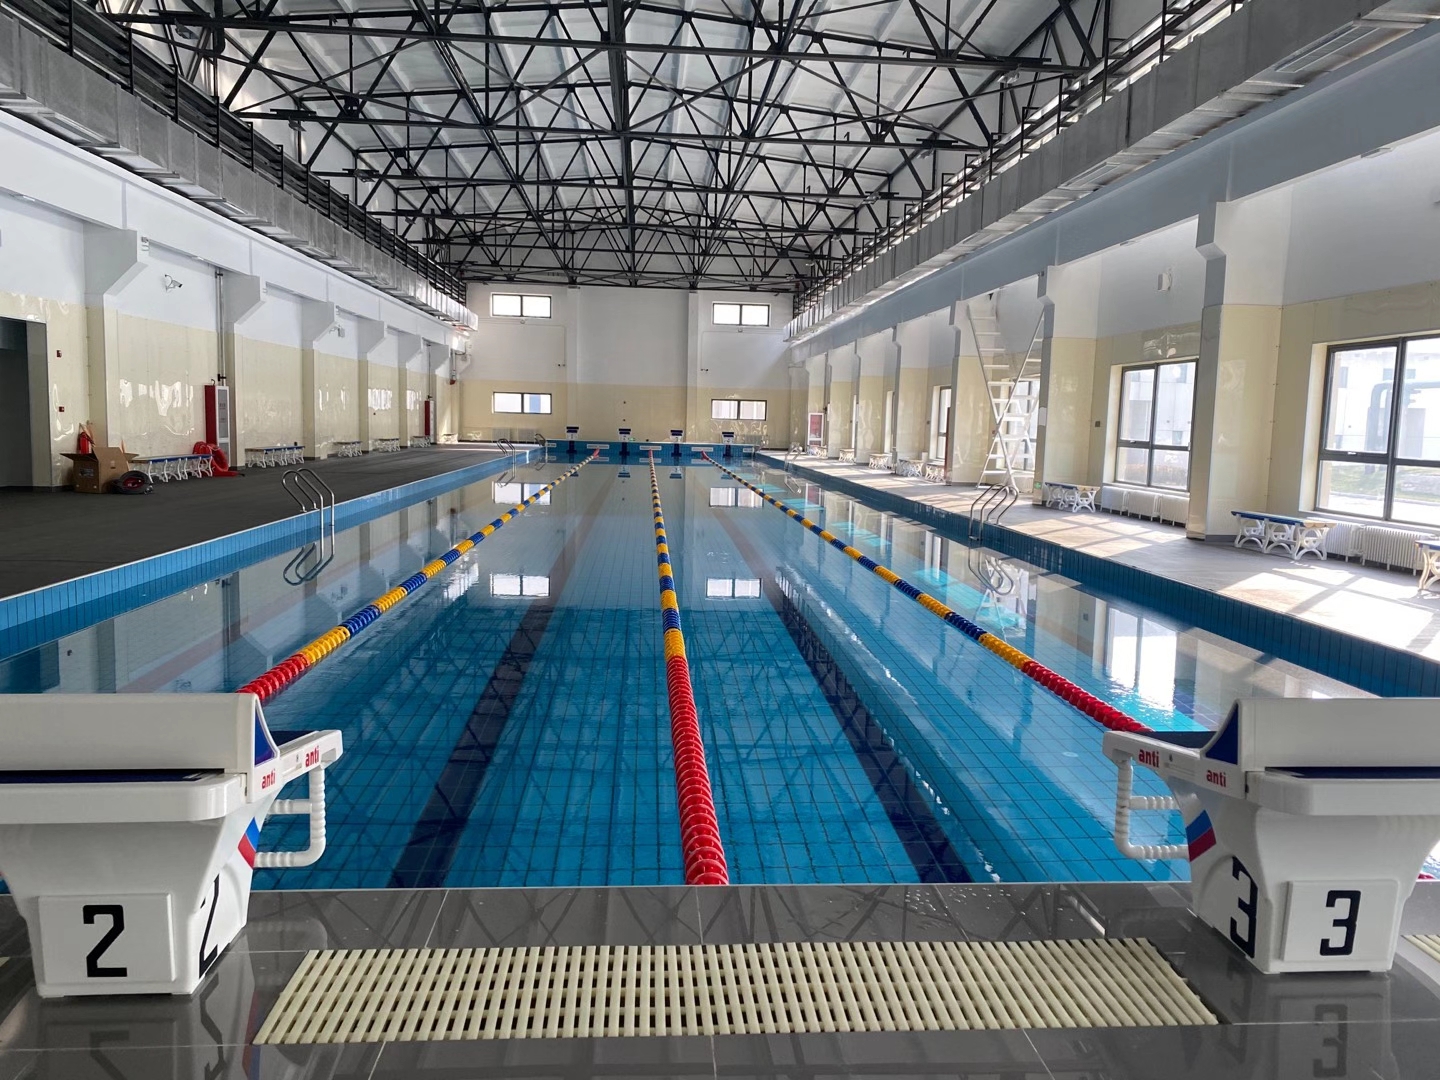 嵌入式泳池灯厂家 泳池设备供应商 北京得有乐水科技